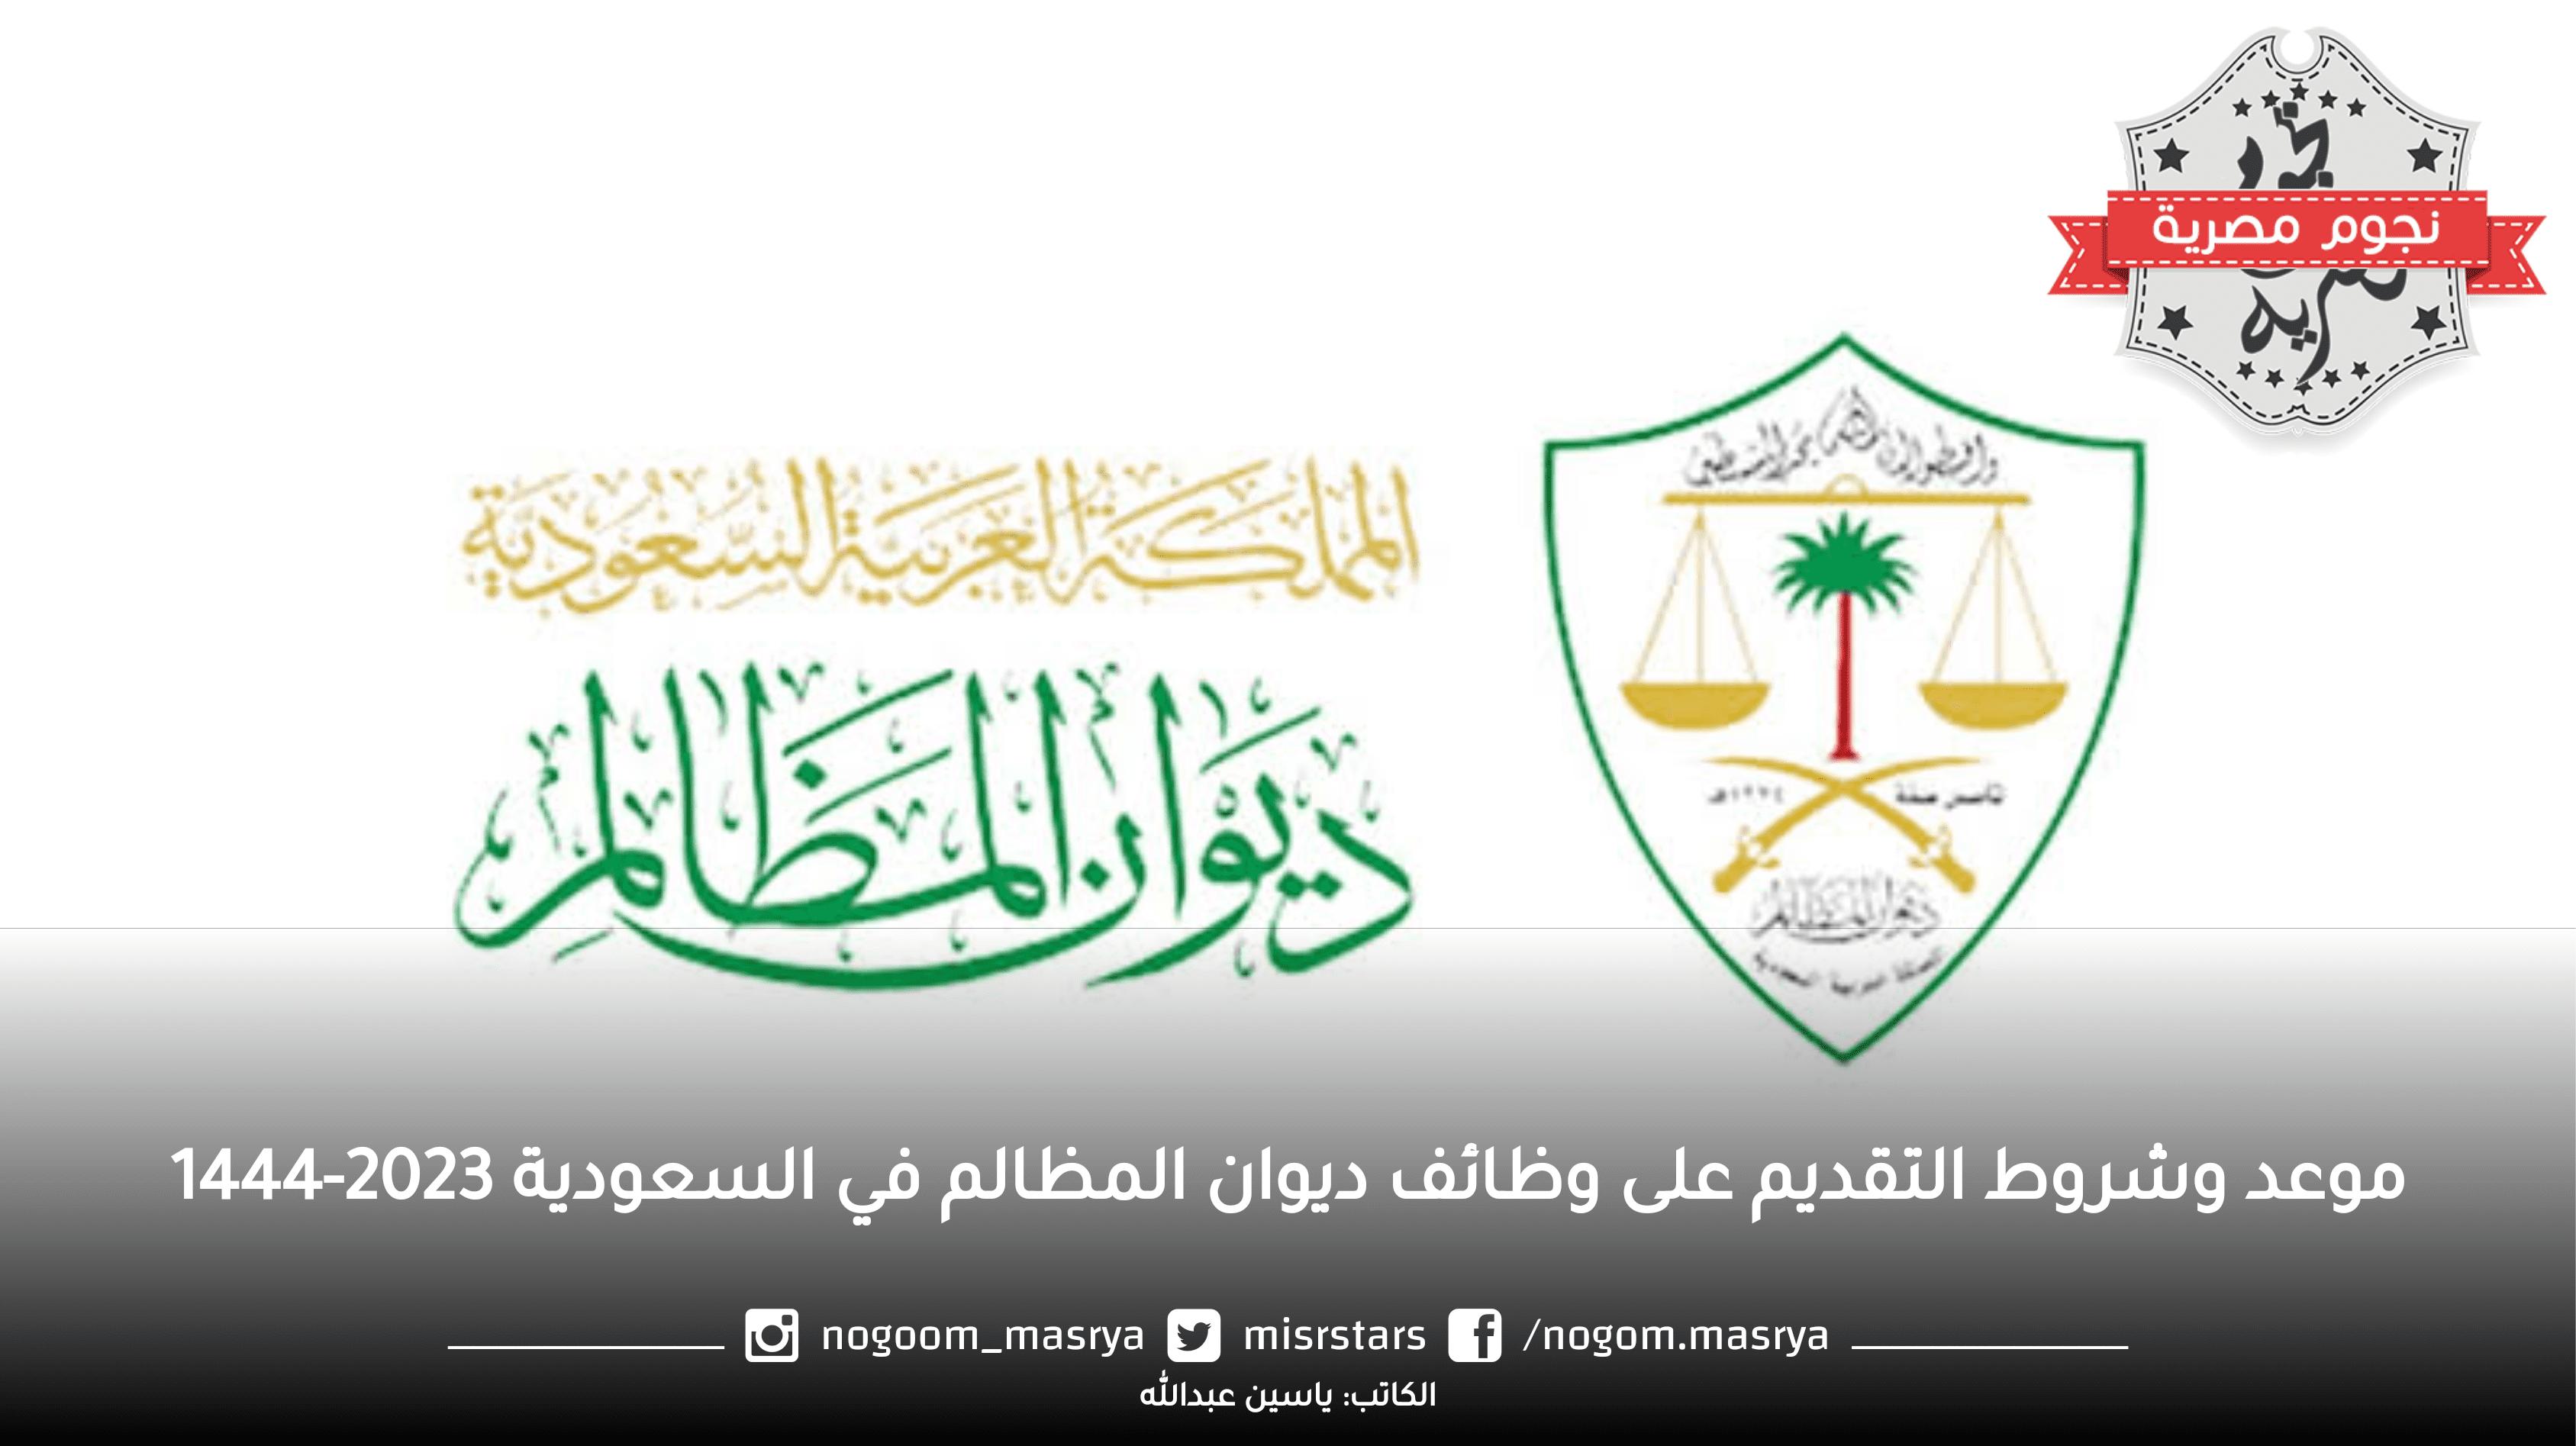 موعد وشروط التقديم على وظائف ديوان المظالم في السعودية 2023-1444